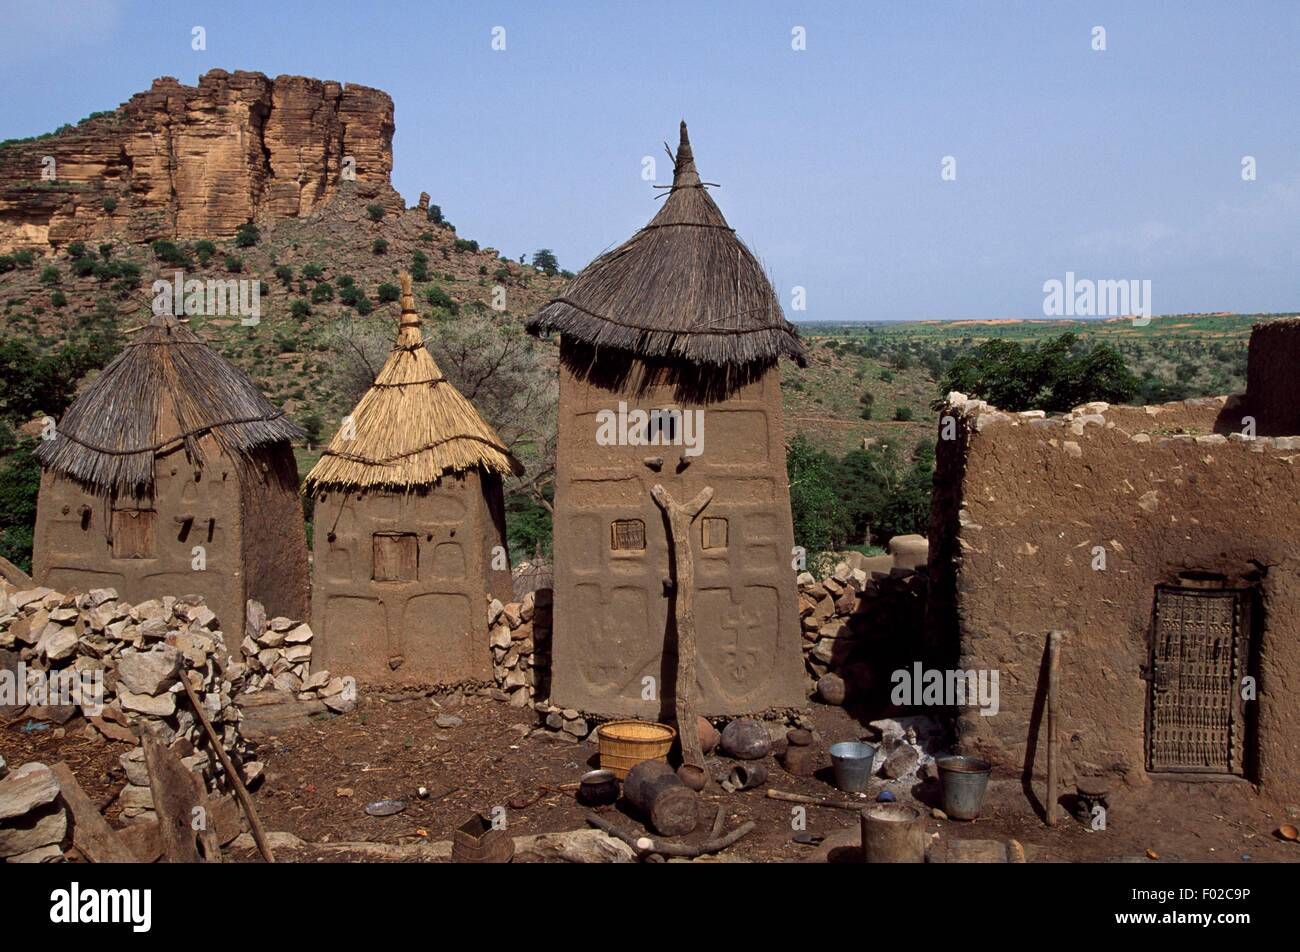 Trois greniers et une maison dans le village de Dogon Banani, Bandiagara (Liste du patrimoine mondial de l'UNESCO, 1989), Mopti, au Mali. Banque D'Images